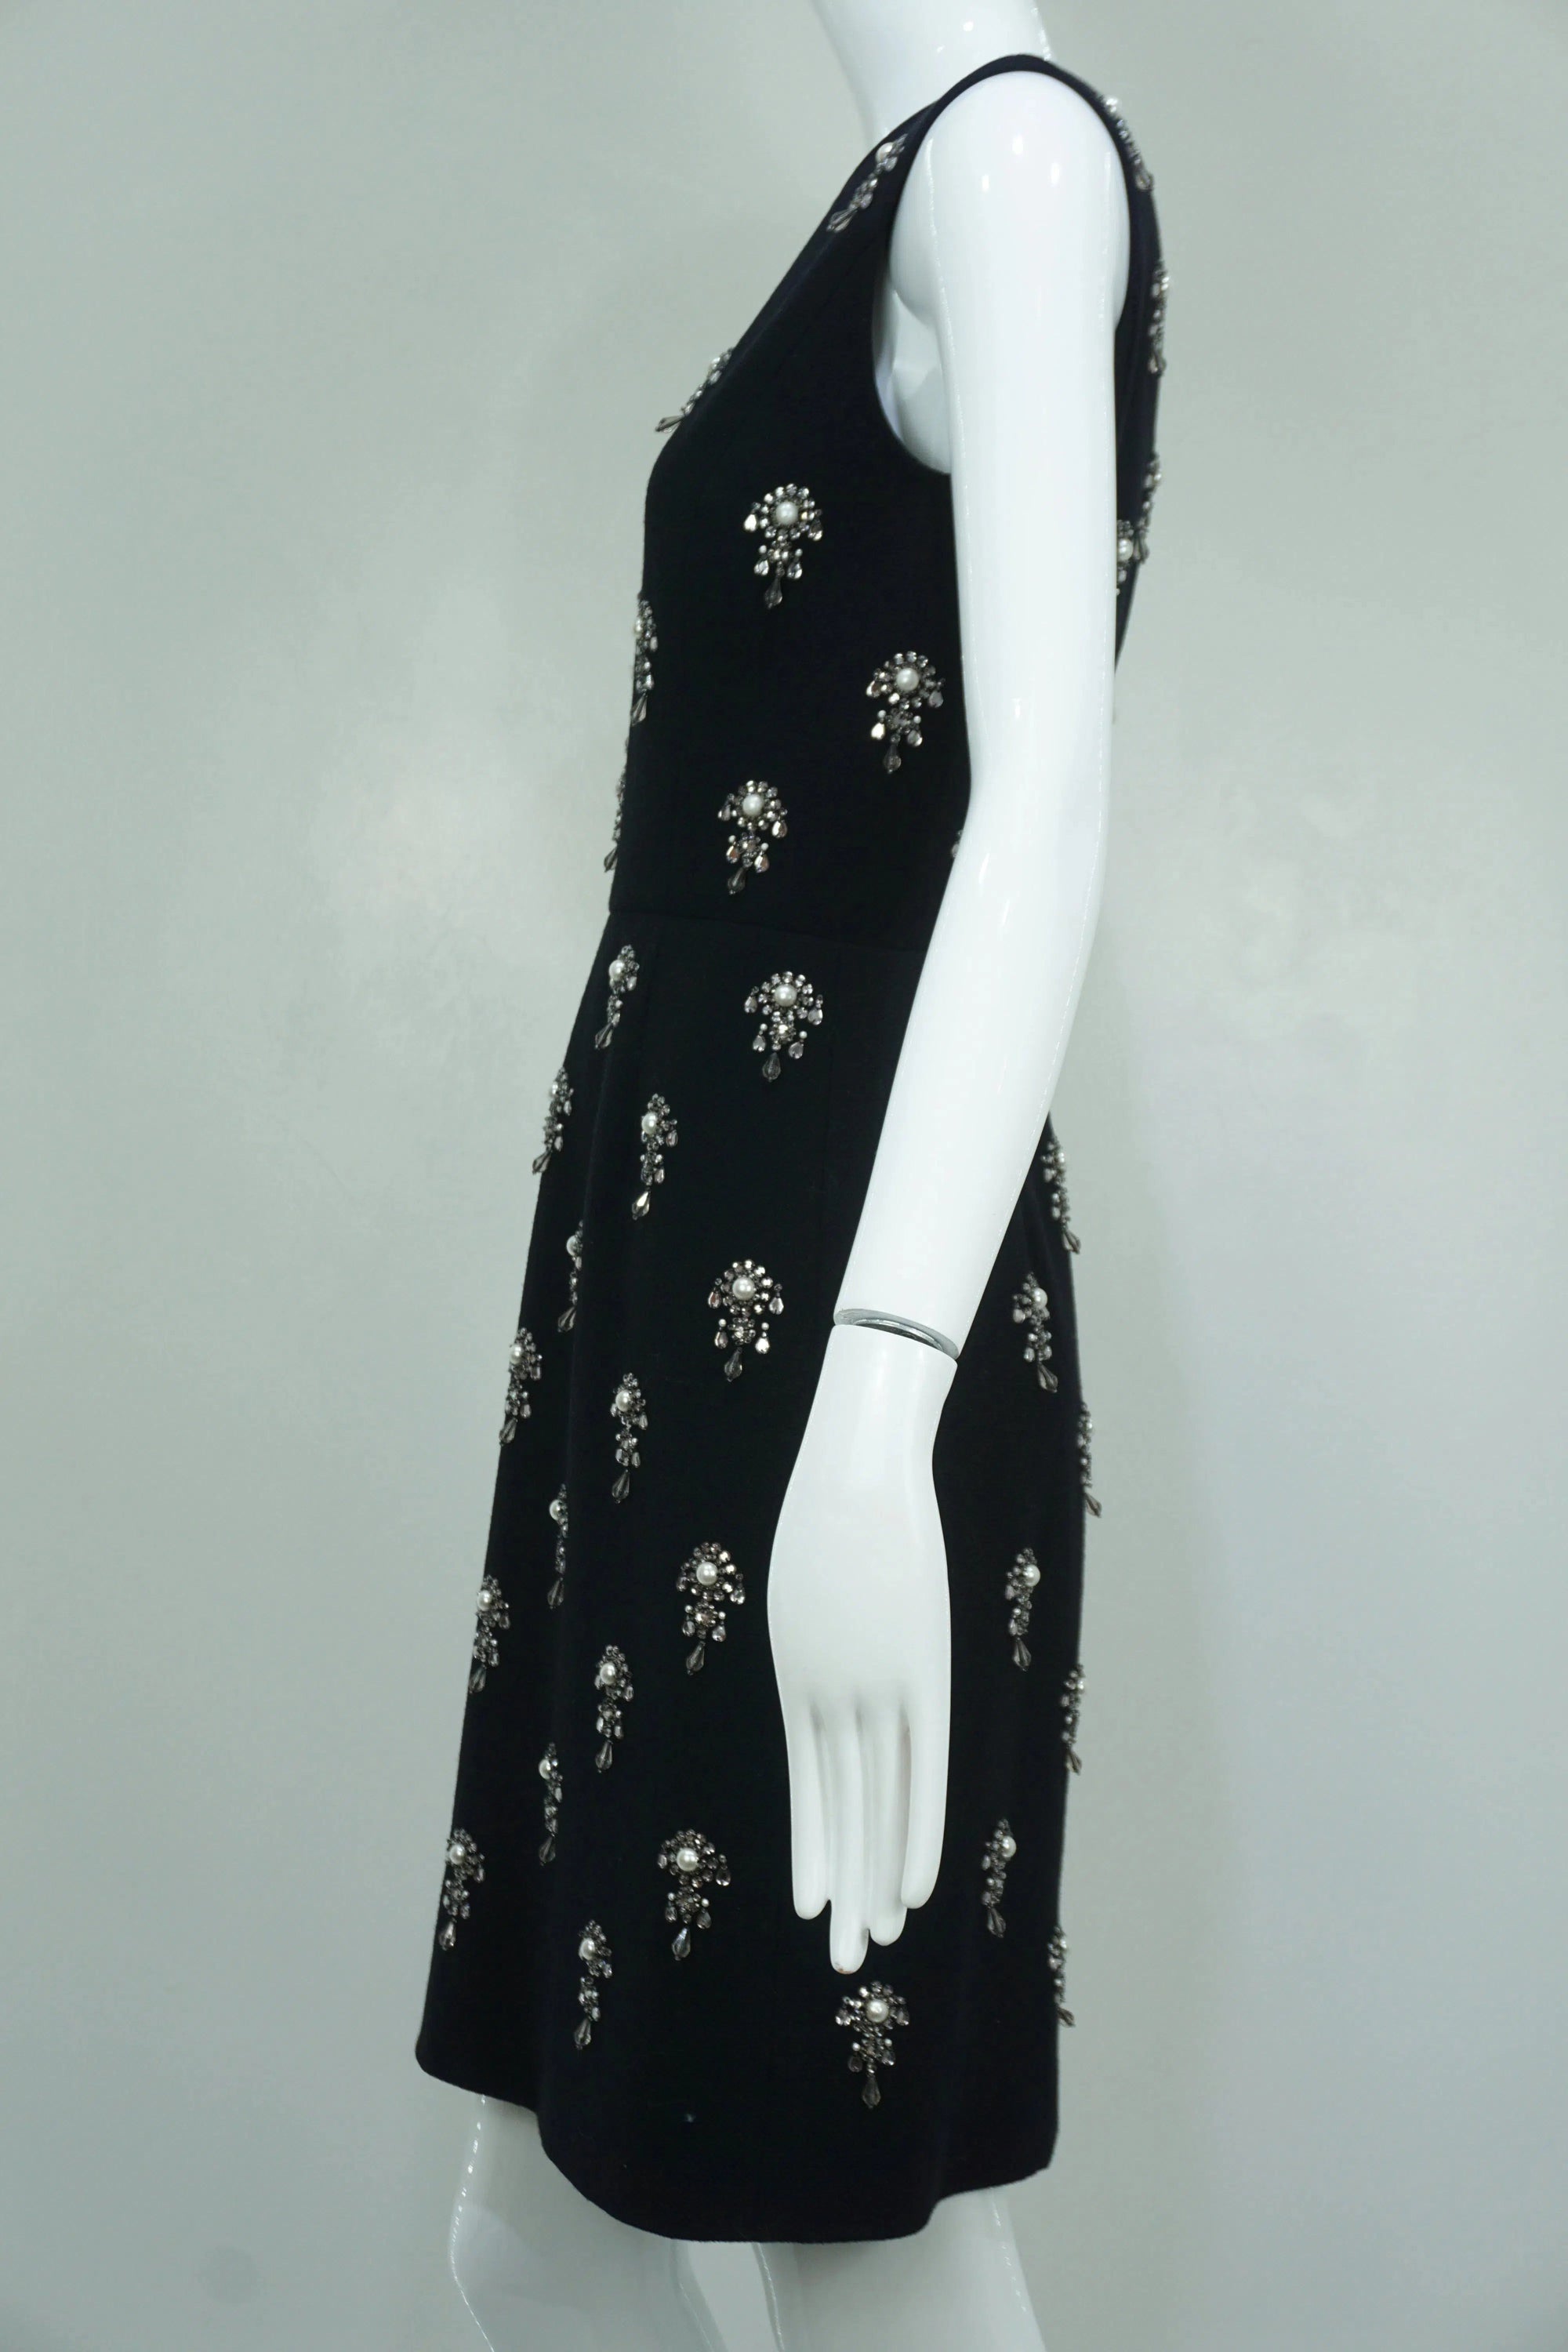 Oscar de la Renta Black Pearl & Crystal Embellished Cocktail Dress Sz4